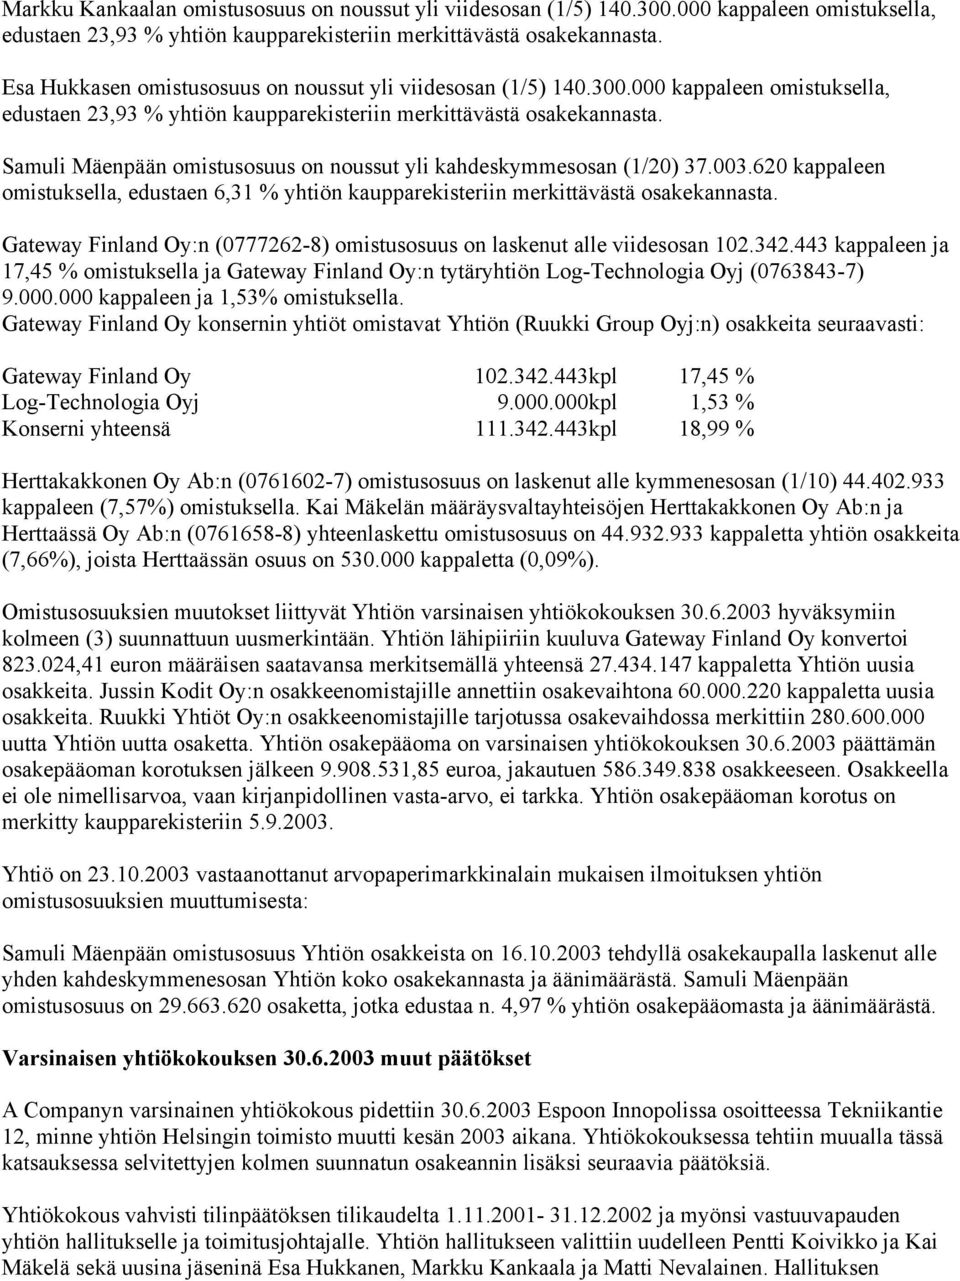 Samuli Mäenpään omistusosuus on noussut yli kahdeskymmesosan (1/20) 37.003.620 kappaleen omistuksella, edustaen 6,31 % yhtiön kaupparekisteriin merkittävästä osakekannasta.